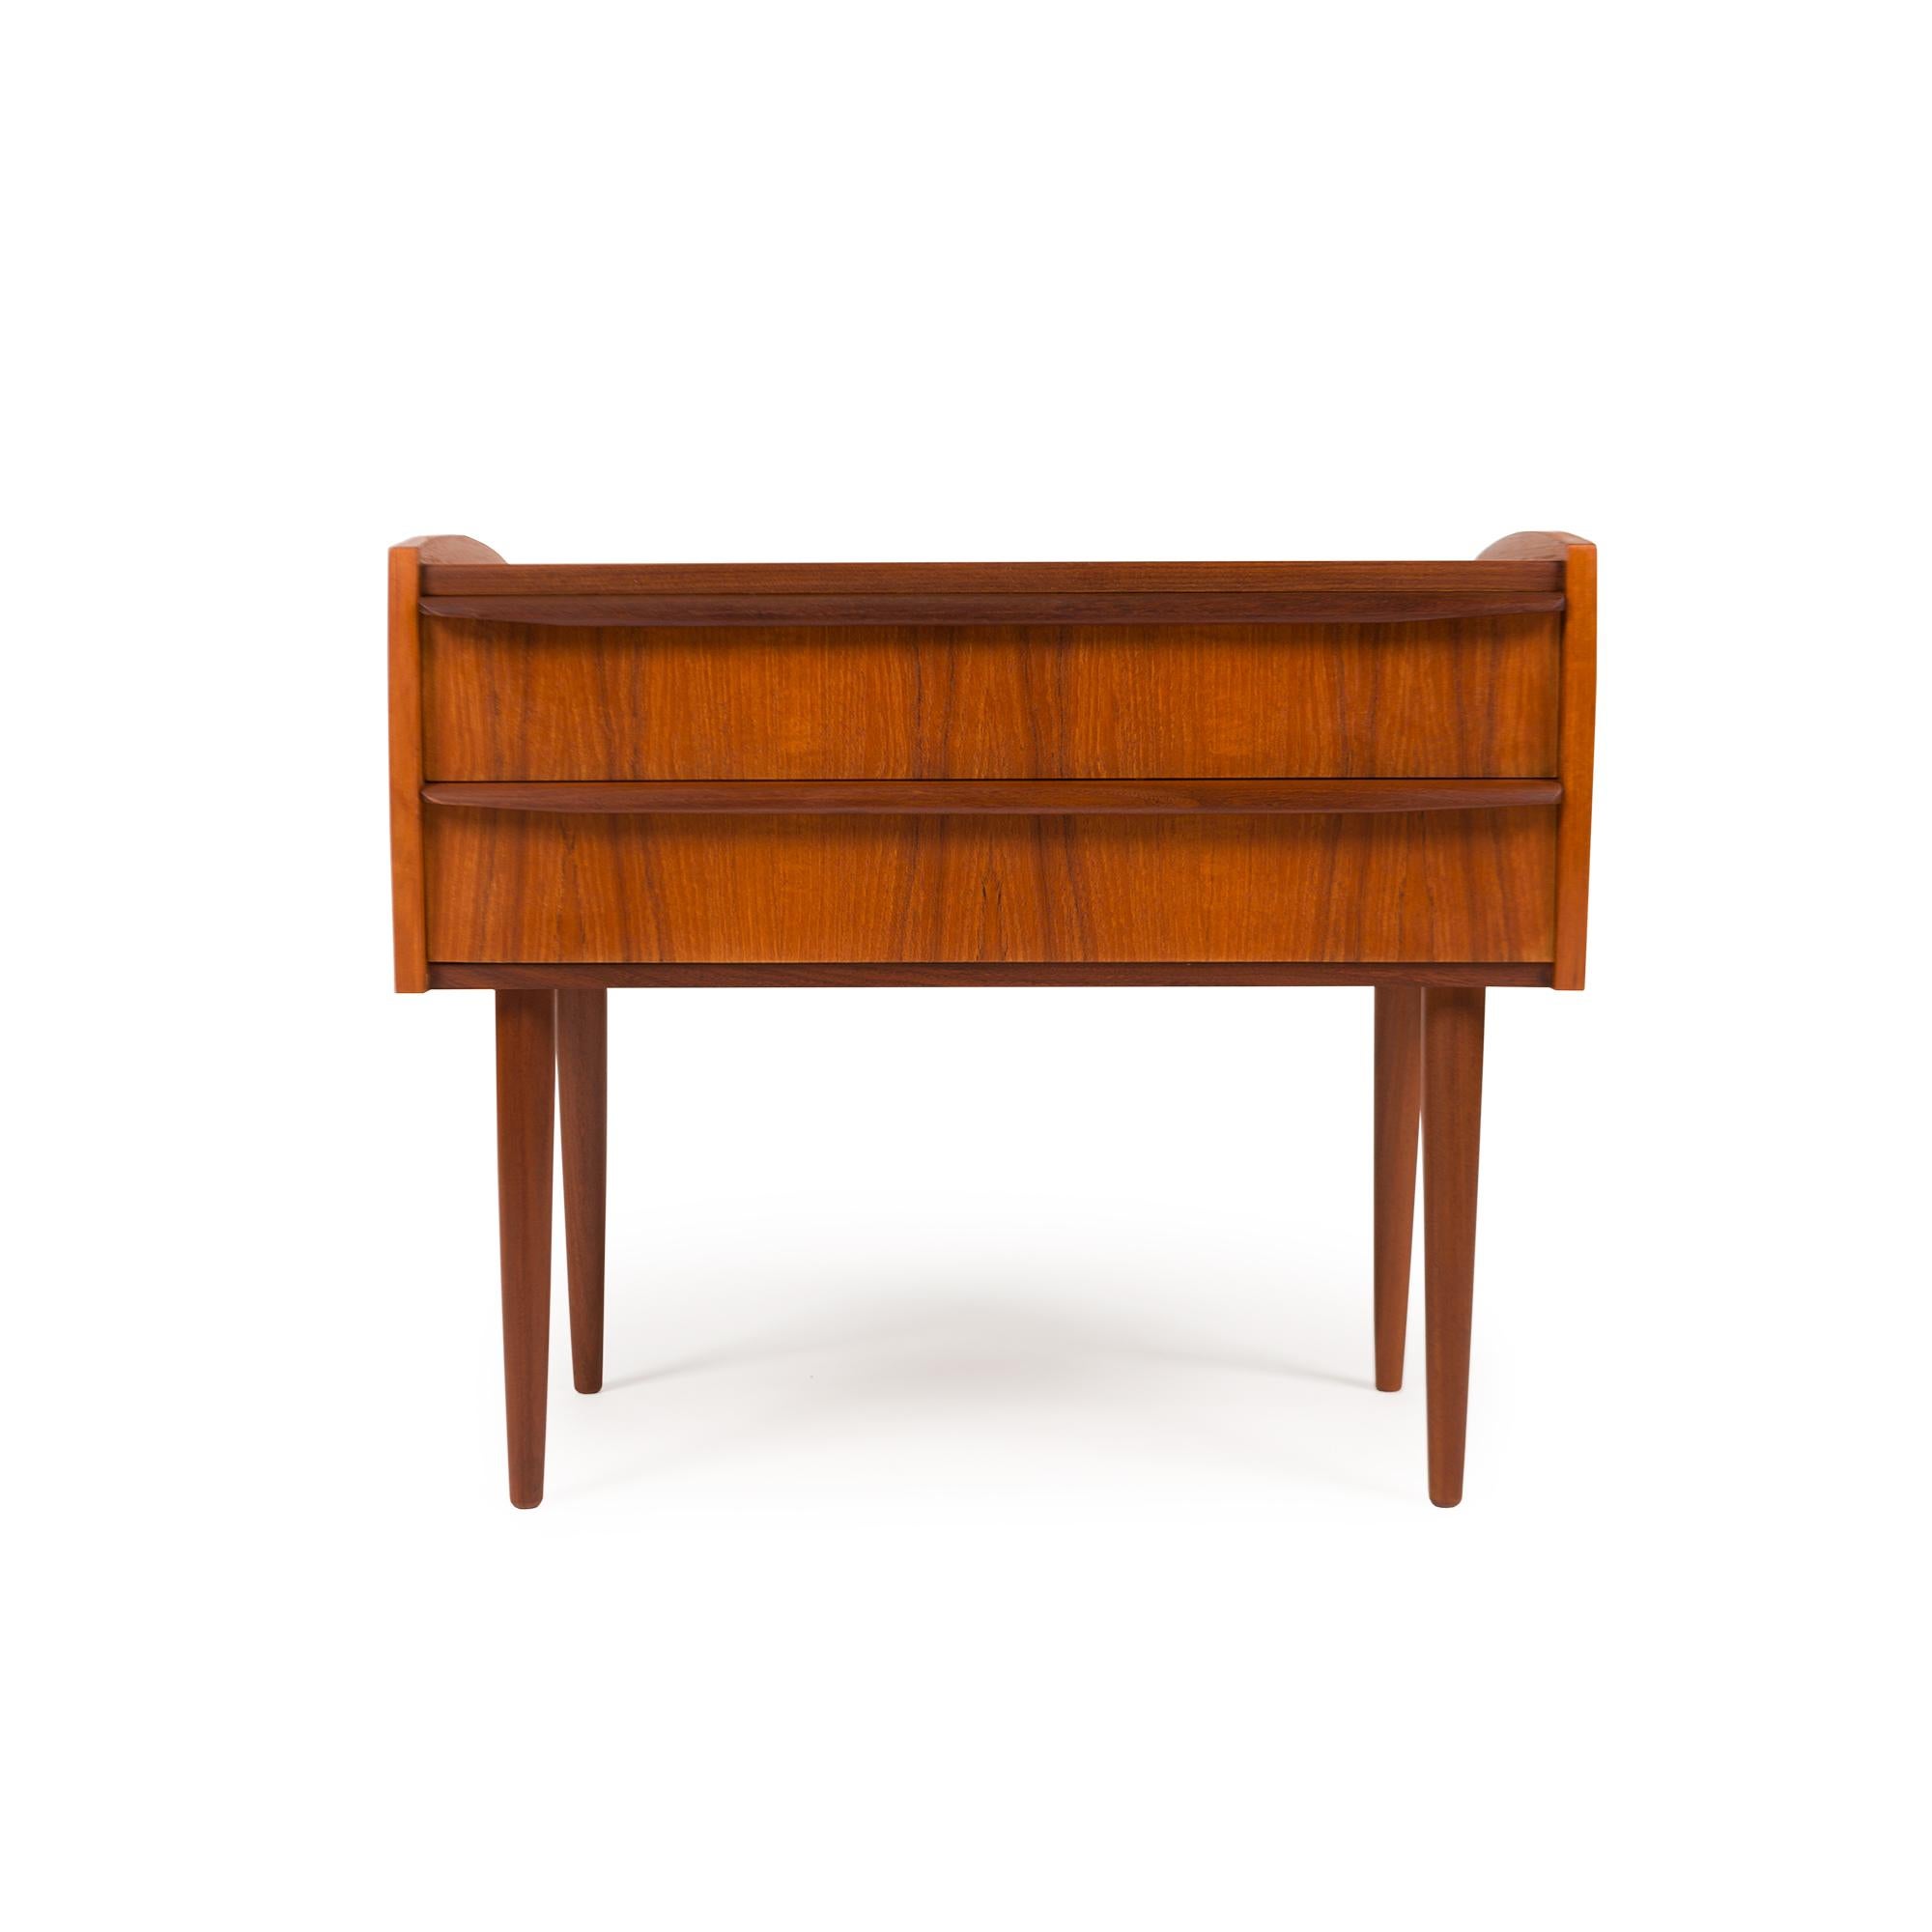 Le mobilier danois du milieu du siècle incarne les principes du design scandinave avec son élégance intemporelle, sa fonctionnalité et son savoir-faire exceptionnel. Florissante dans les années 1950 et 1960, elle reflète les sensibilités